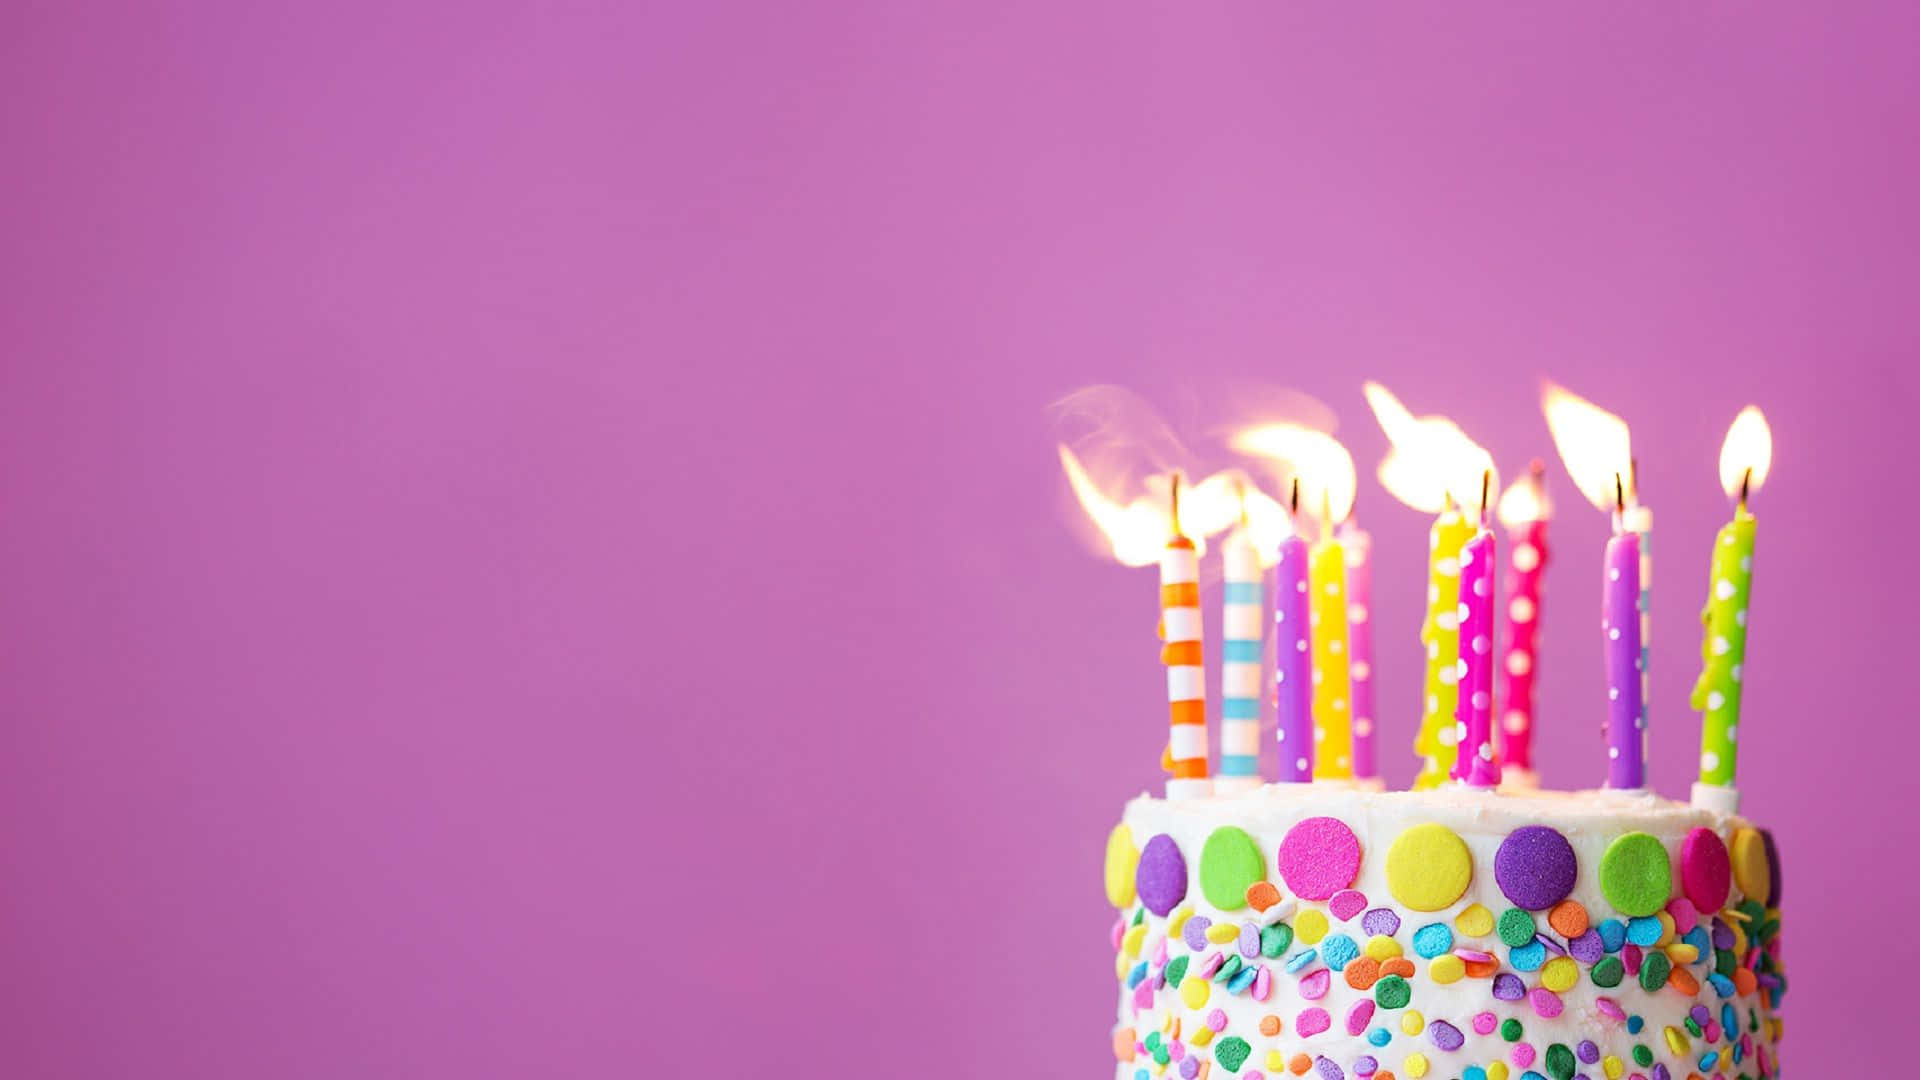 Bunteshintergrundbild Mit Einer Mini Geburtstagstorte Mit Kerzen